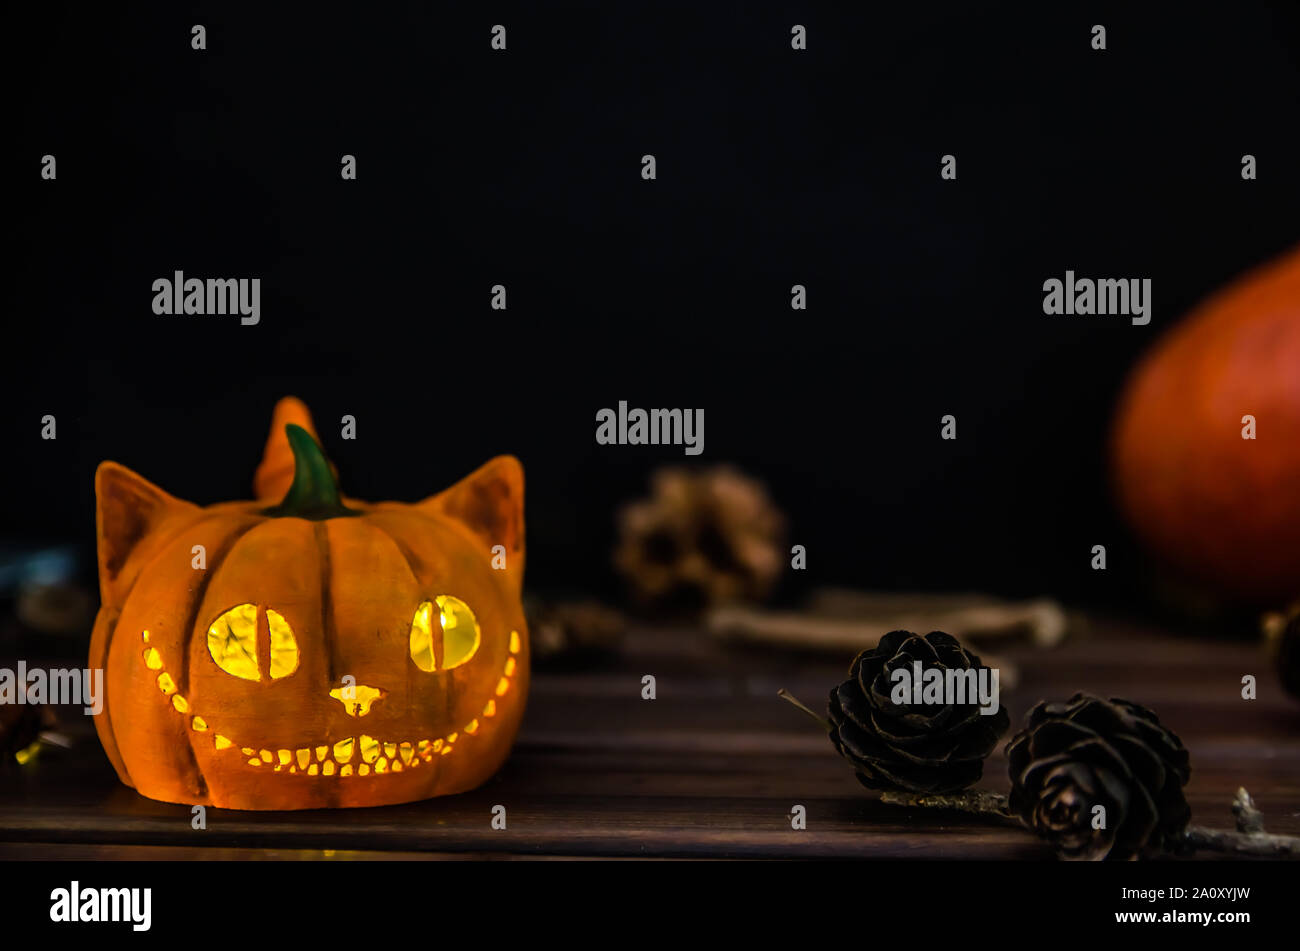 Cheshire Cat Banque D Image Et Photos Page 3 Alamy